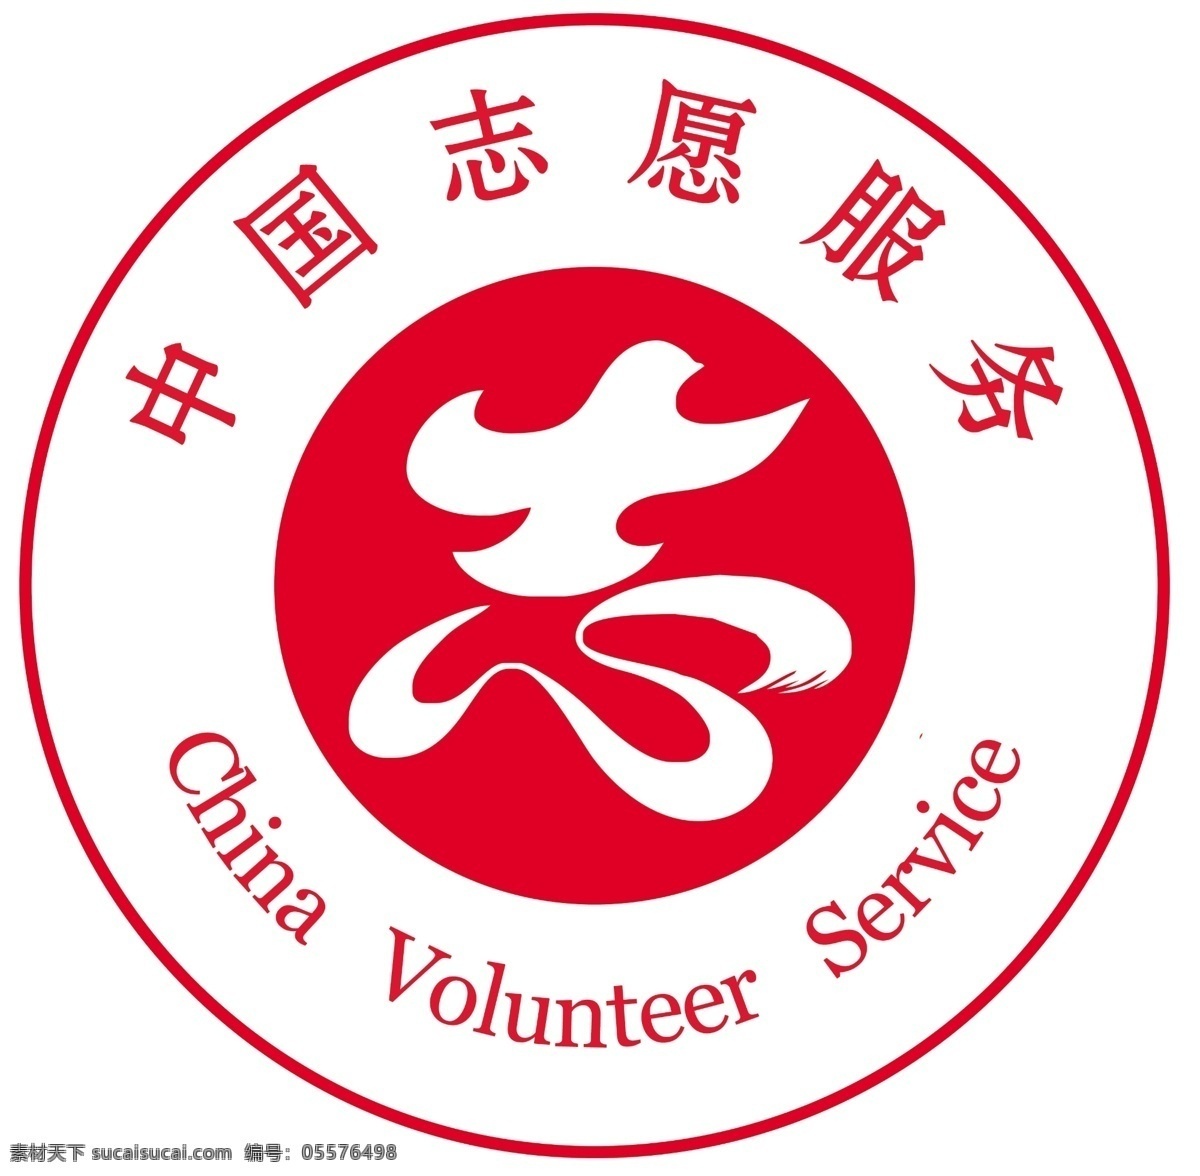 中国志愿服务 图标 志愿服务 服务 标志 标志图标 公共标识标志